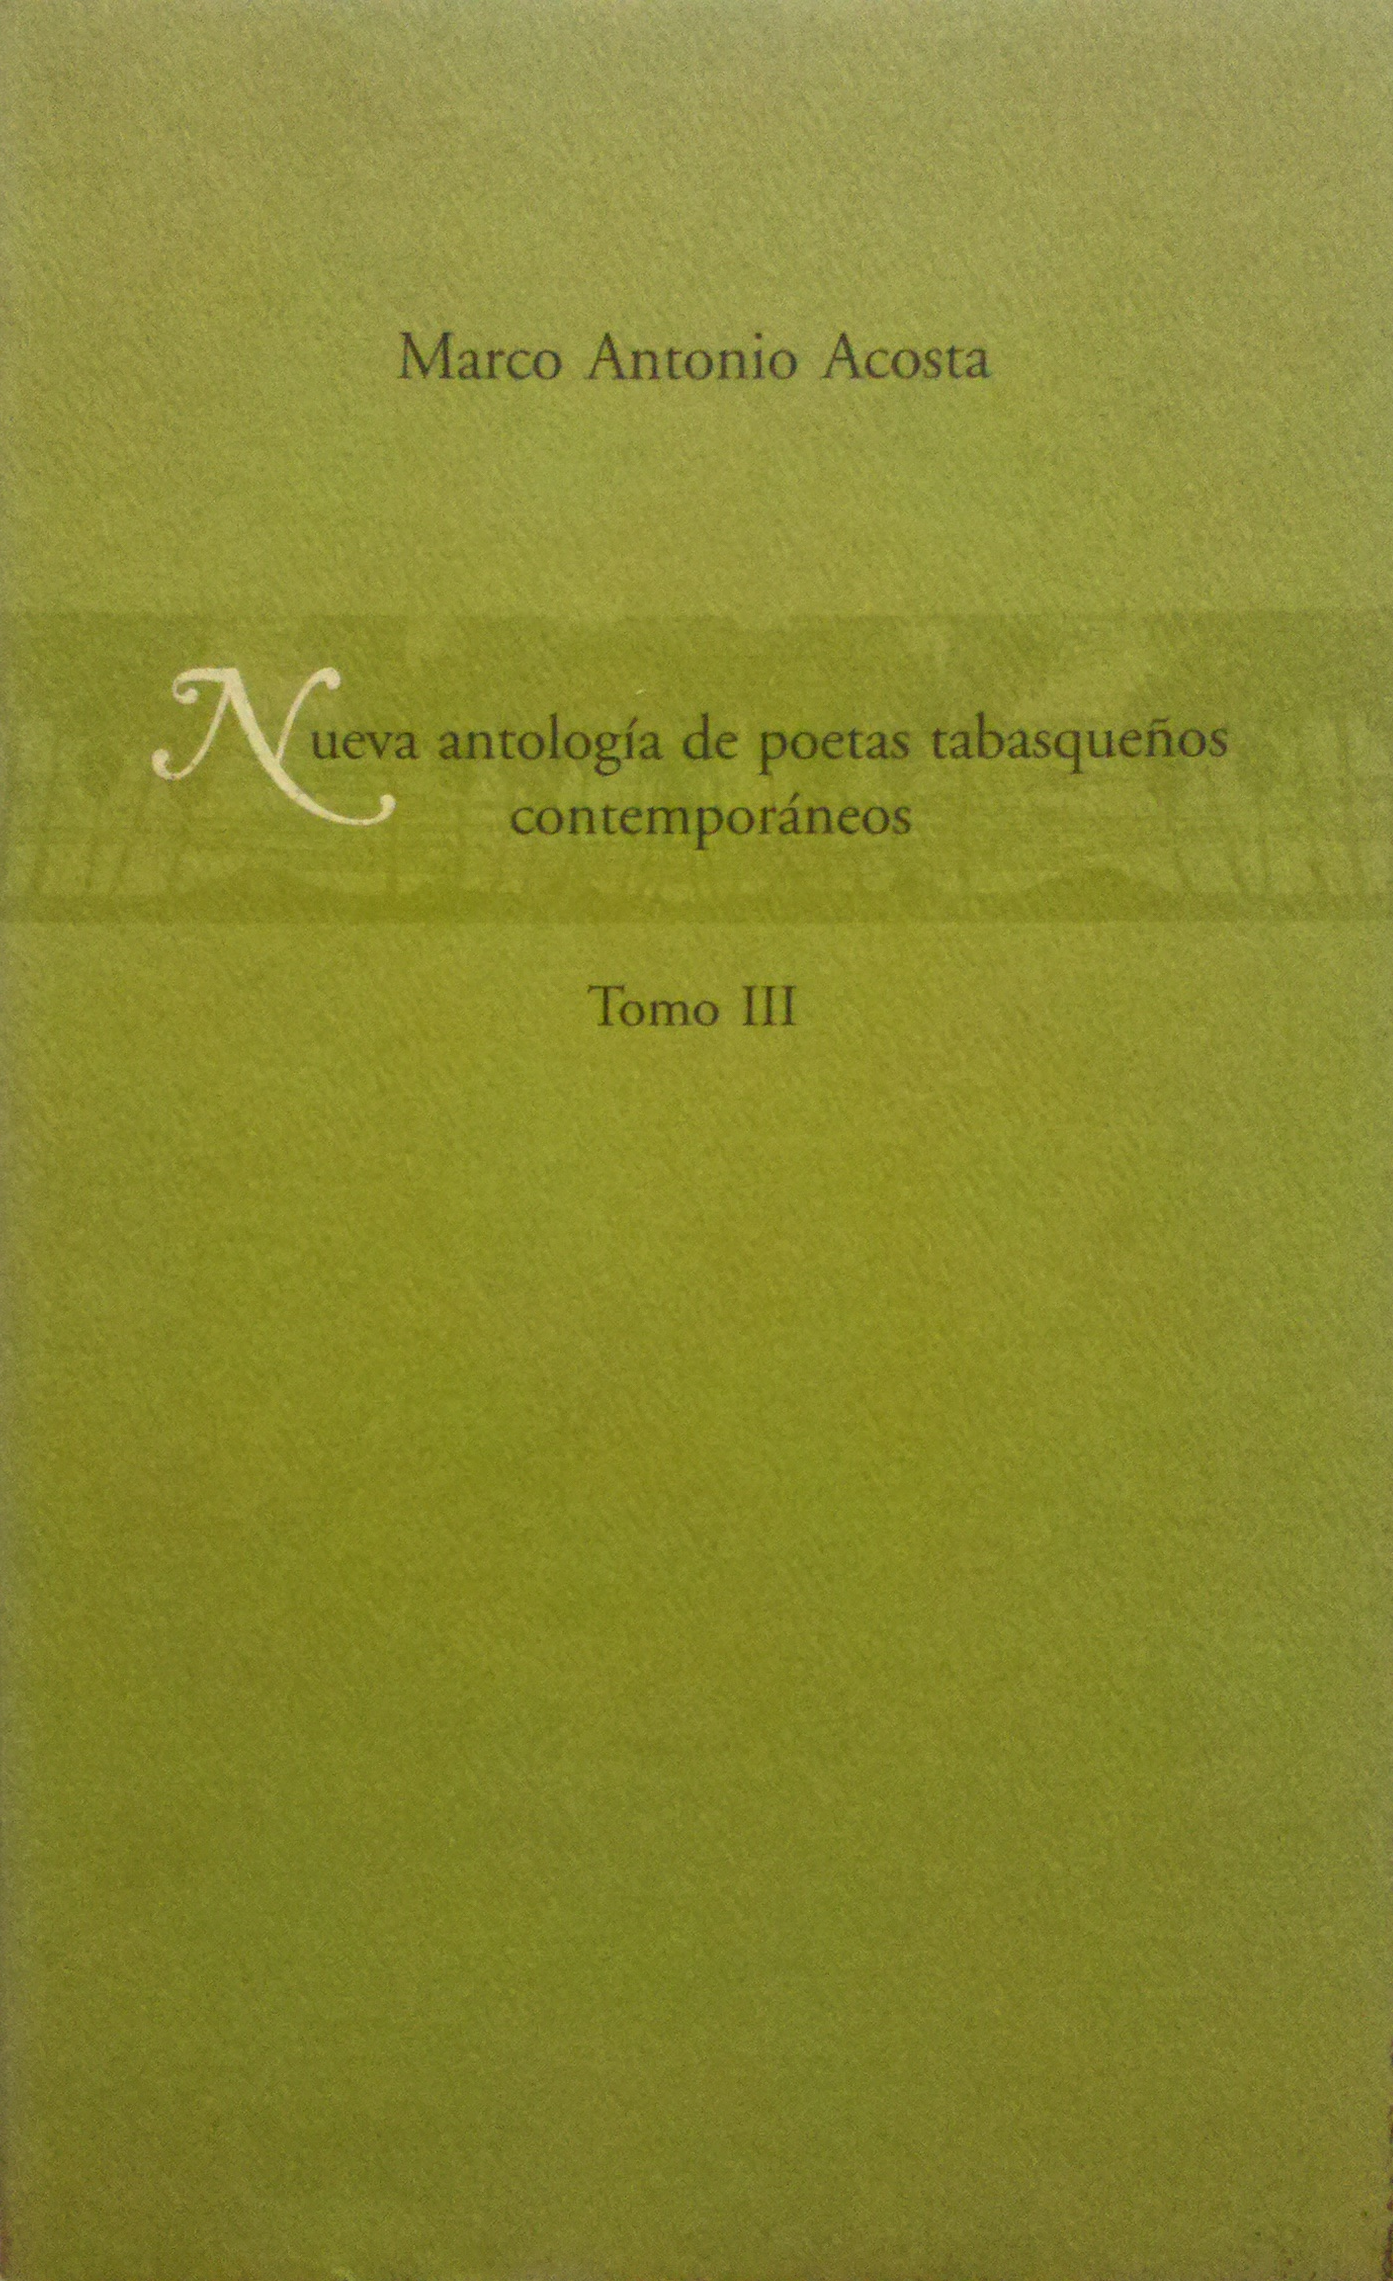 Marco Antonio Acosta y la construcción de la historia de la poesía en Tabasco